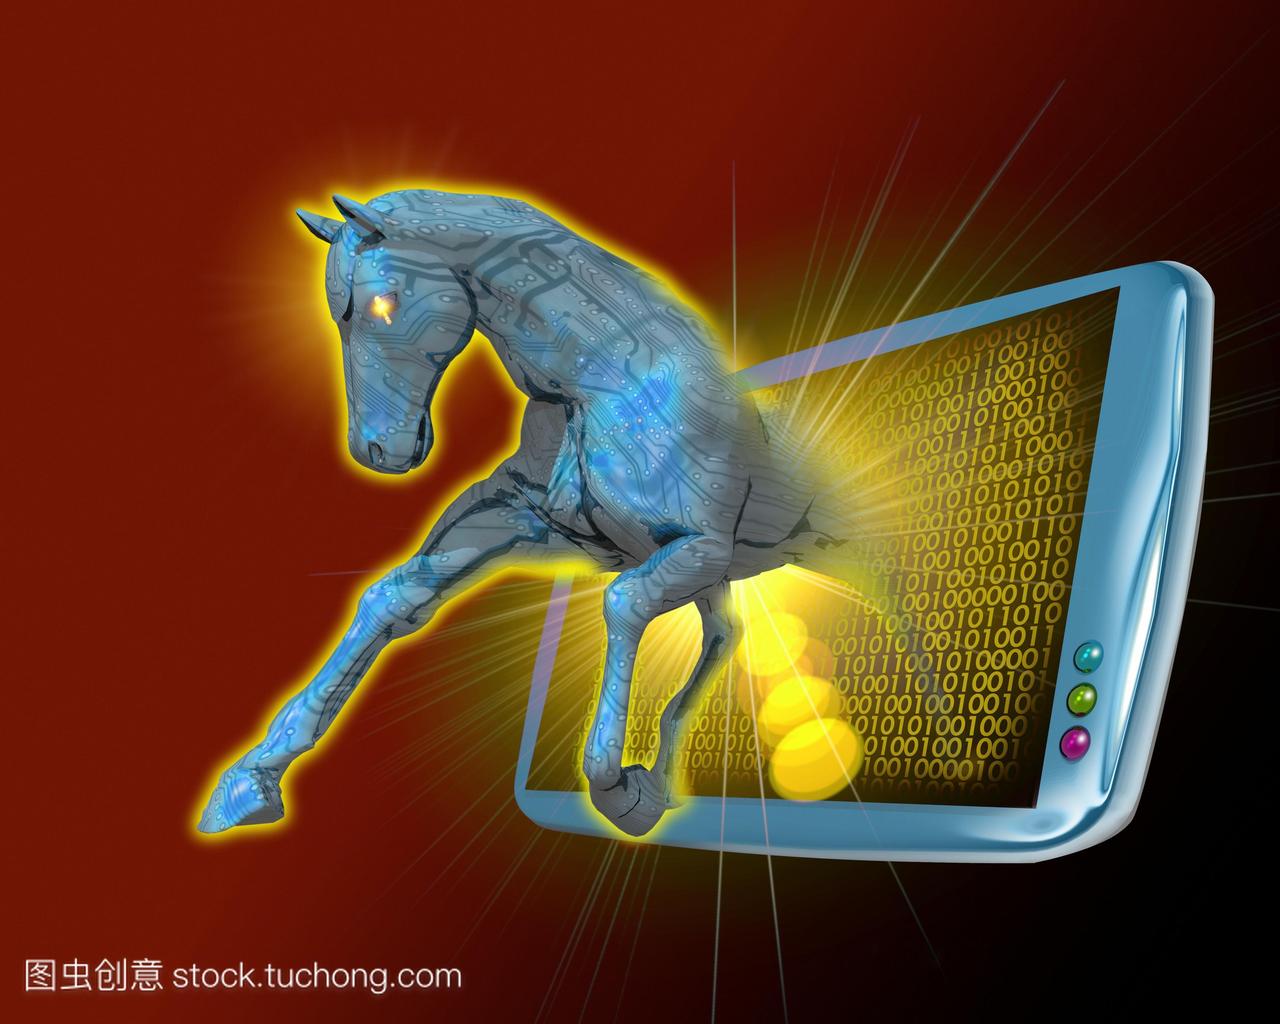 特洛伊木马。从电脑显示器中跳出来的马的概念